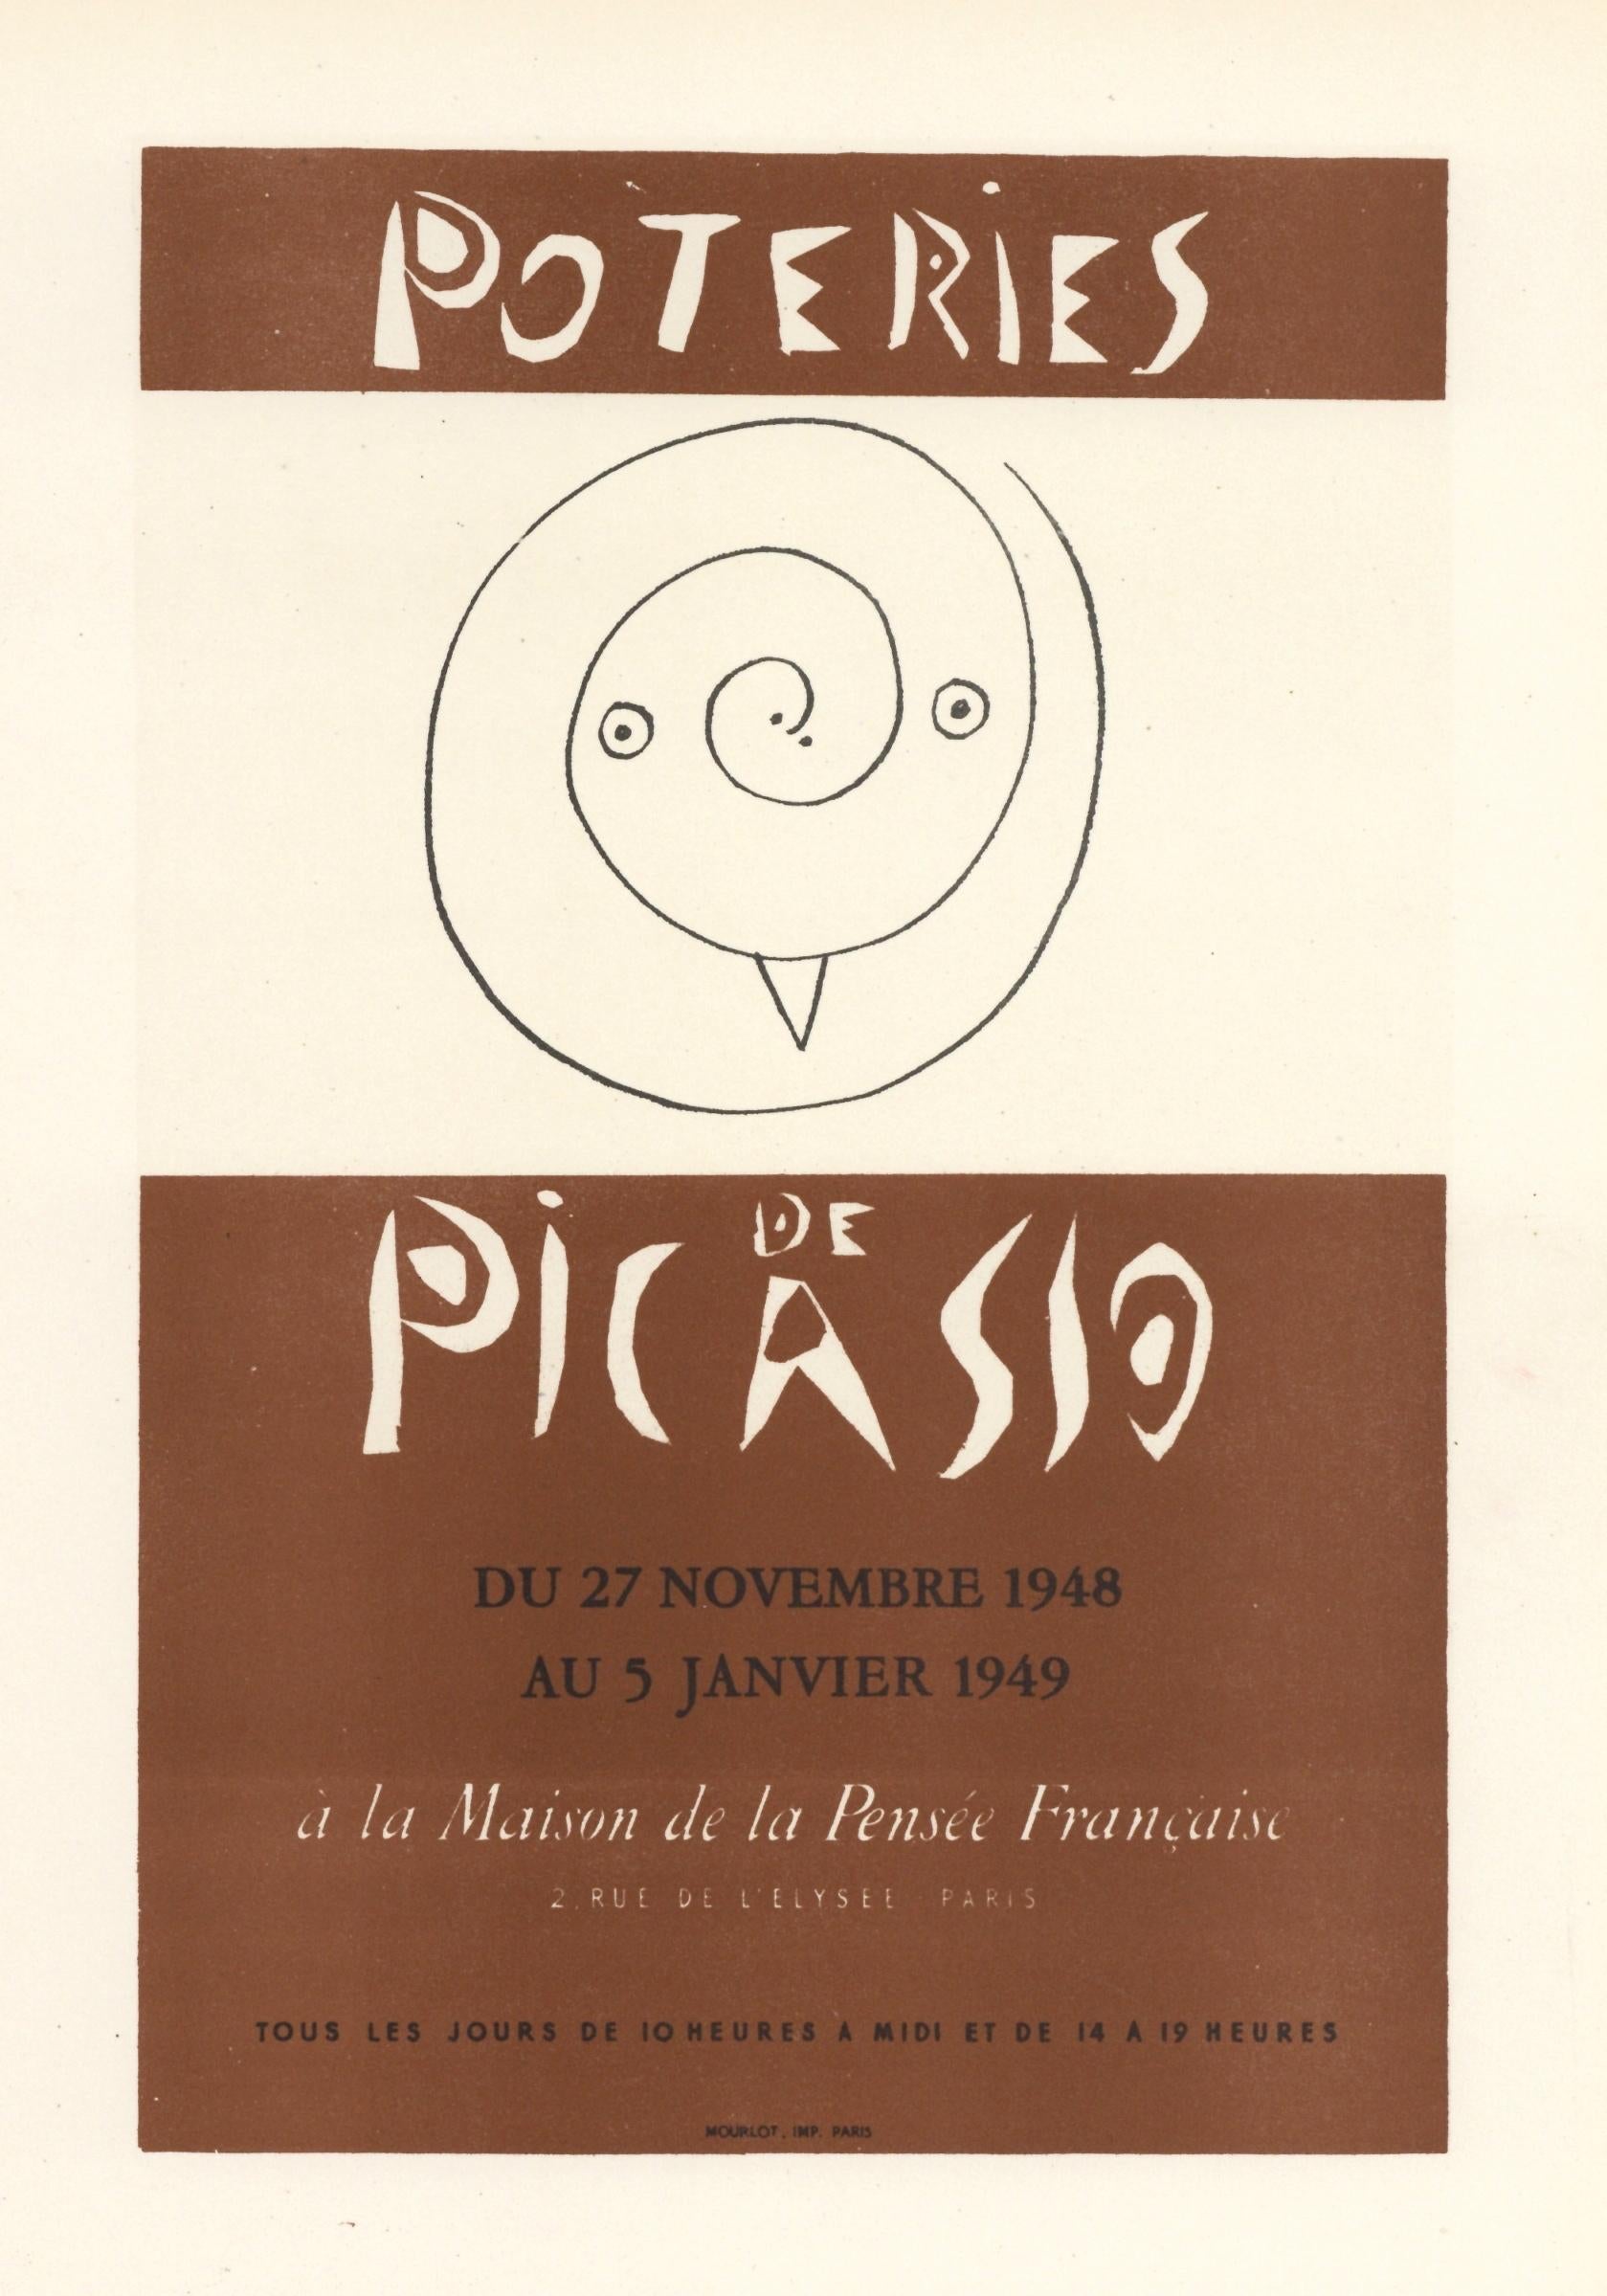 Affiche de lithographie "Poteries de Picasso" - Print de (after) Pablo Picasso